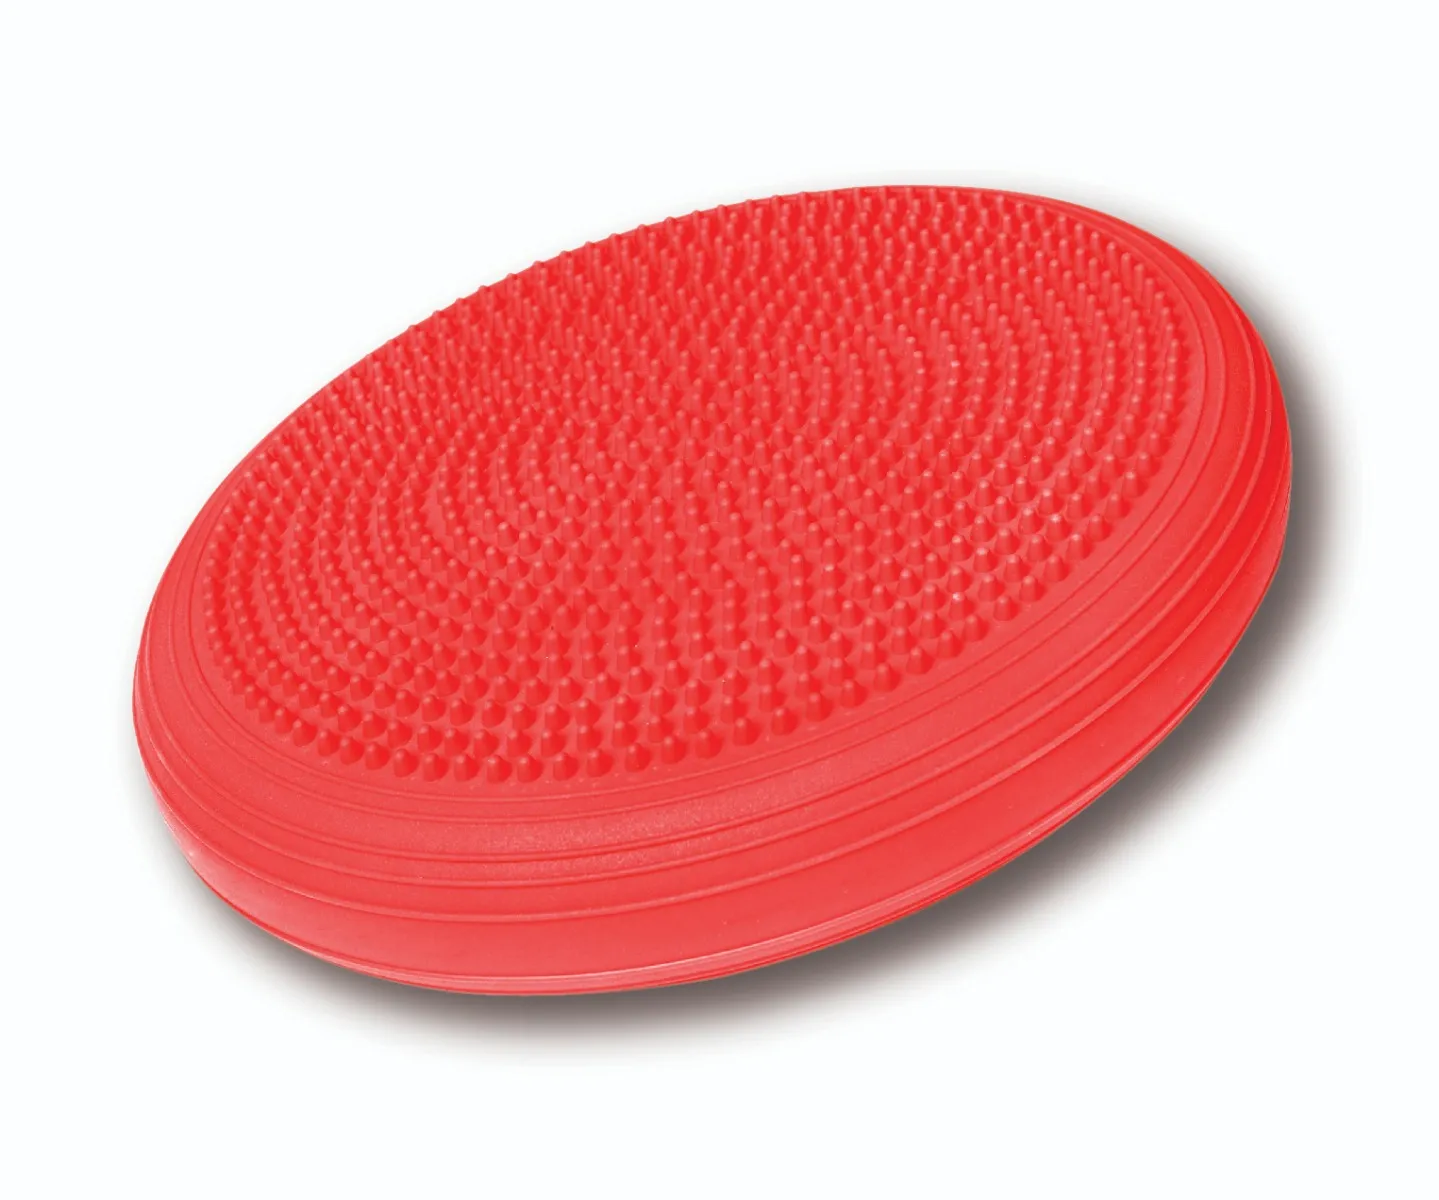 Qmed Balance Disc poduszka sensoryczna z wypustkami czerwona, 1 szt. 